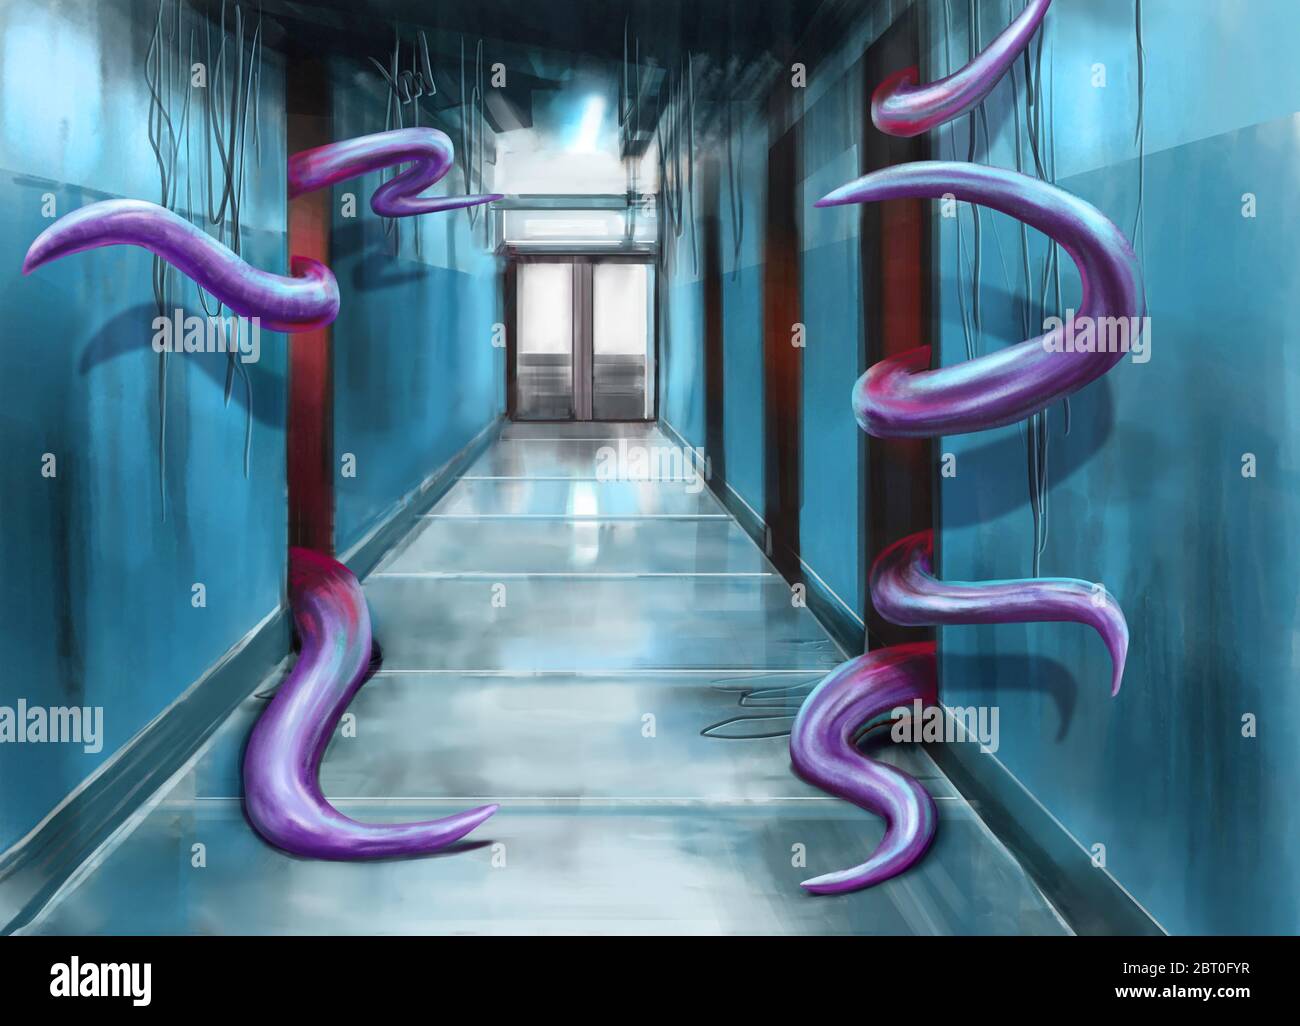 Couloir et tentacules rouge violet fantaisie illustration Banque D'Images